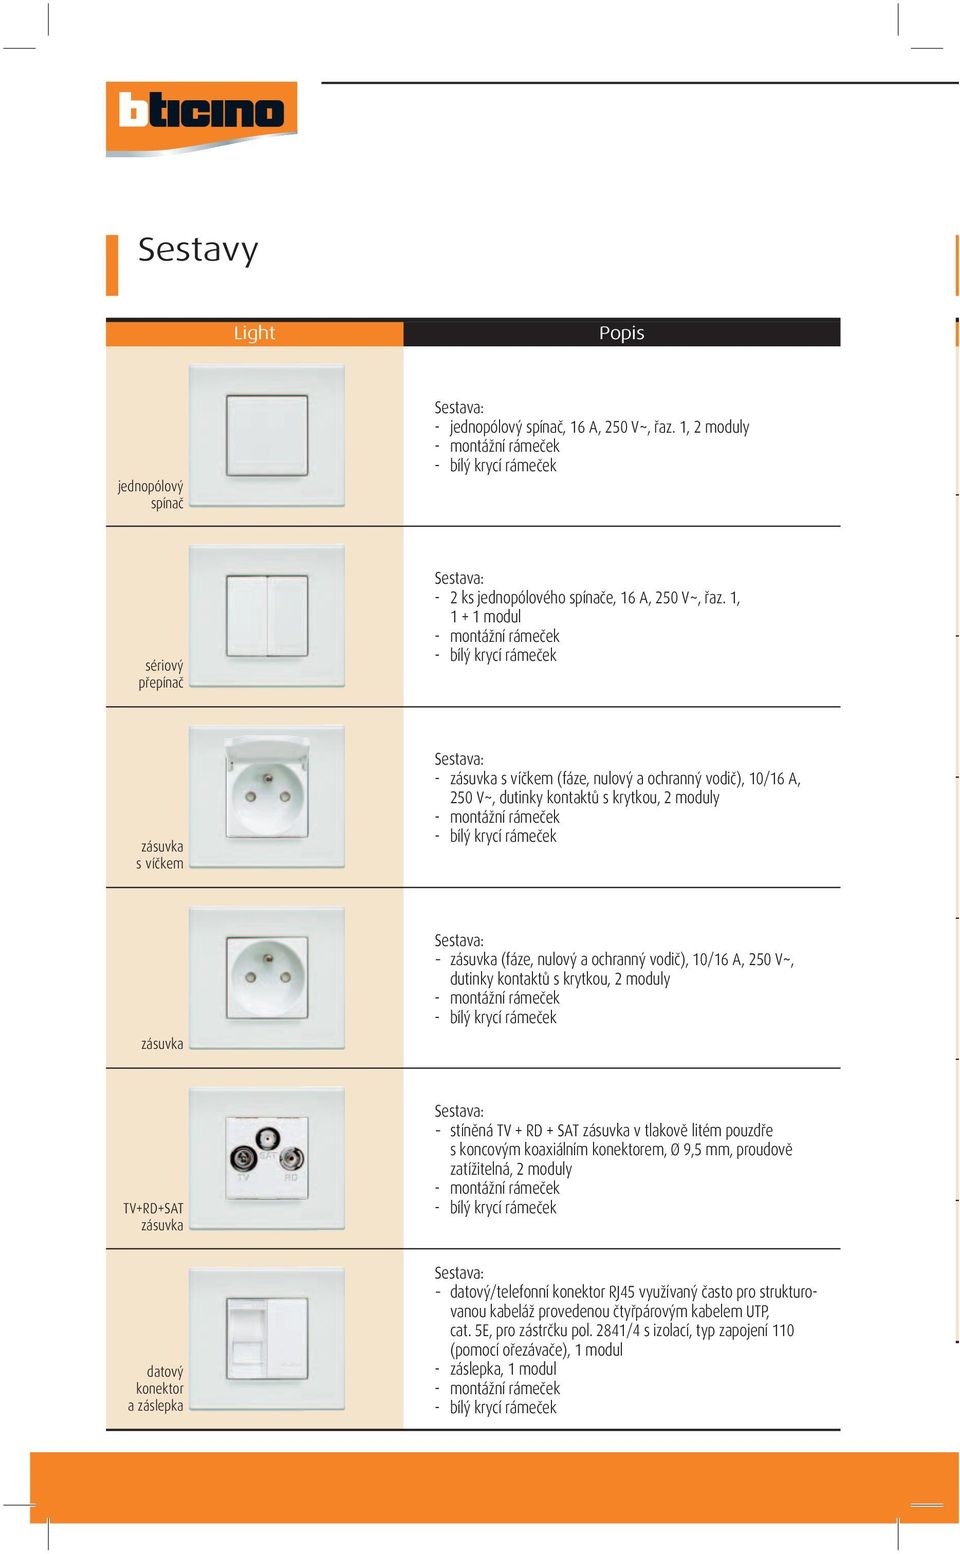 1, 1 + 1 modul - montážní rámeček - bílý krycí rámeček zásuvka s víčkem Sestava: - zásuvka s víčkem (fáze, nulový a ochranný vodič), 10/16 A, 250 V~, dutinky kontaktů s krytkou, 2 moduly - montážní